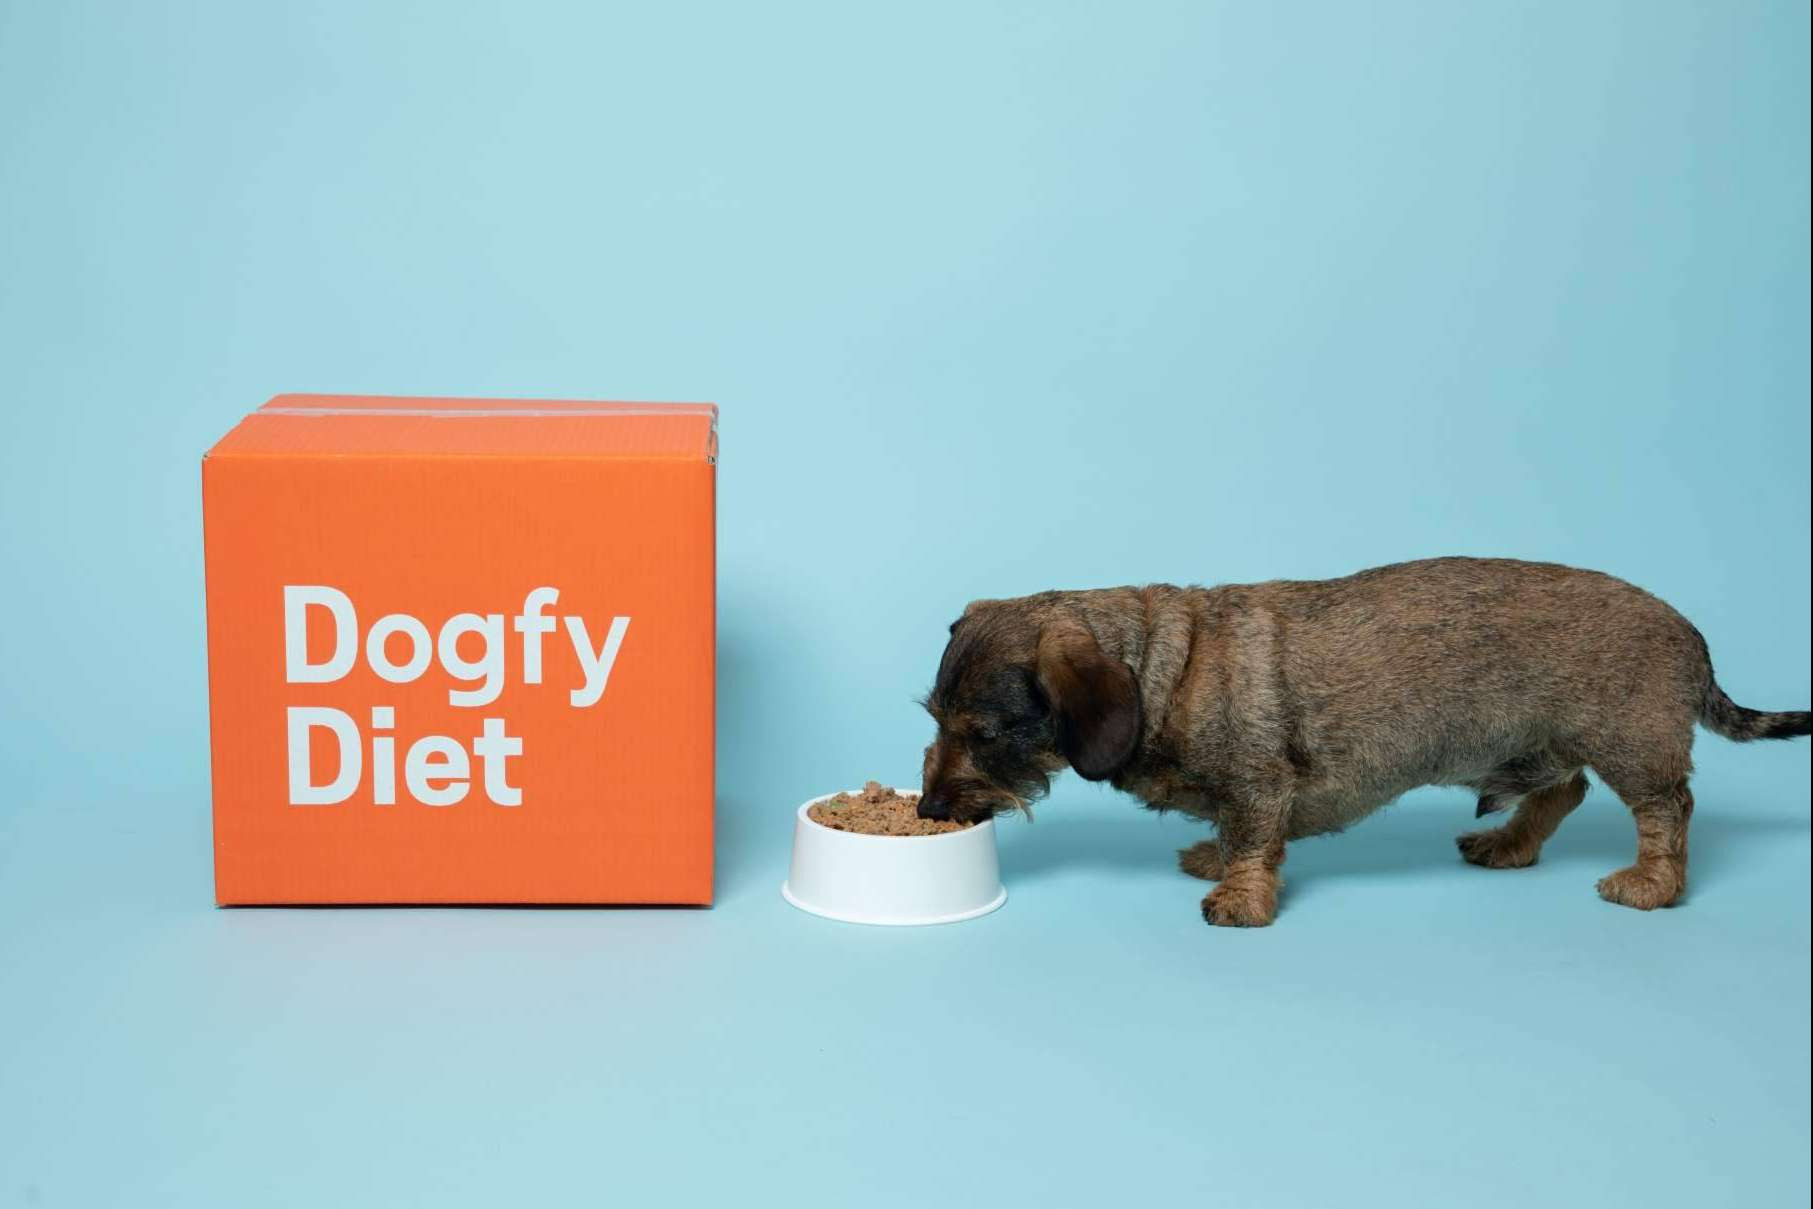  Dogfy Diet revoluciona la nutrición canina con soluciones naturales para la alimentación de perros 